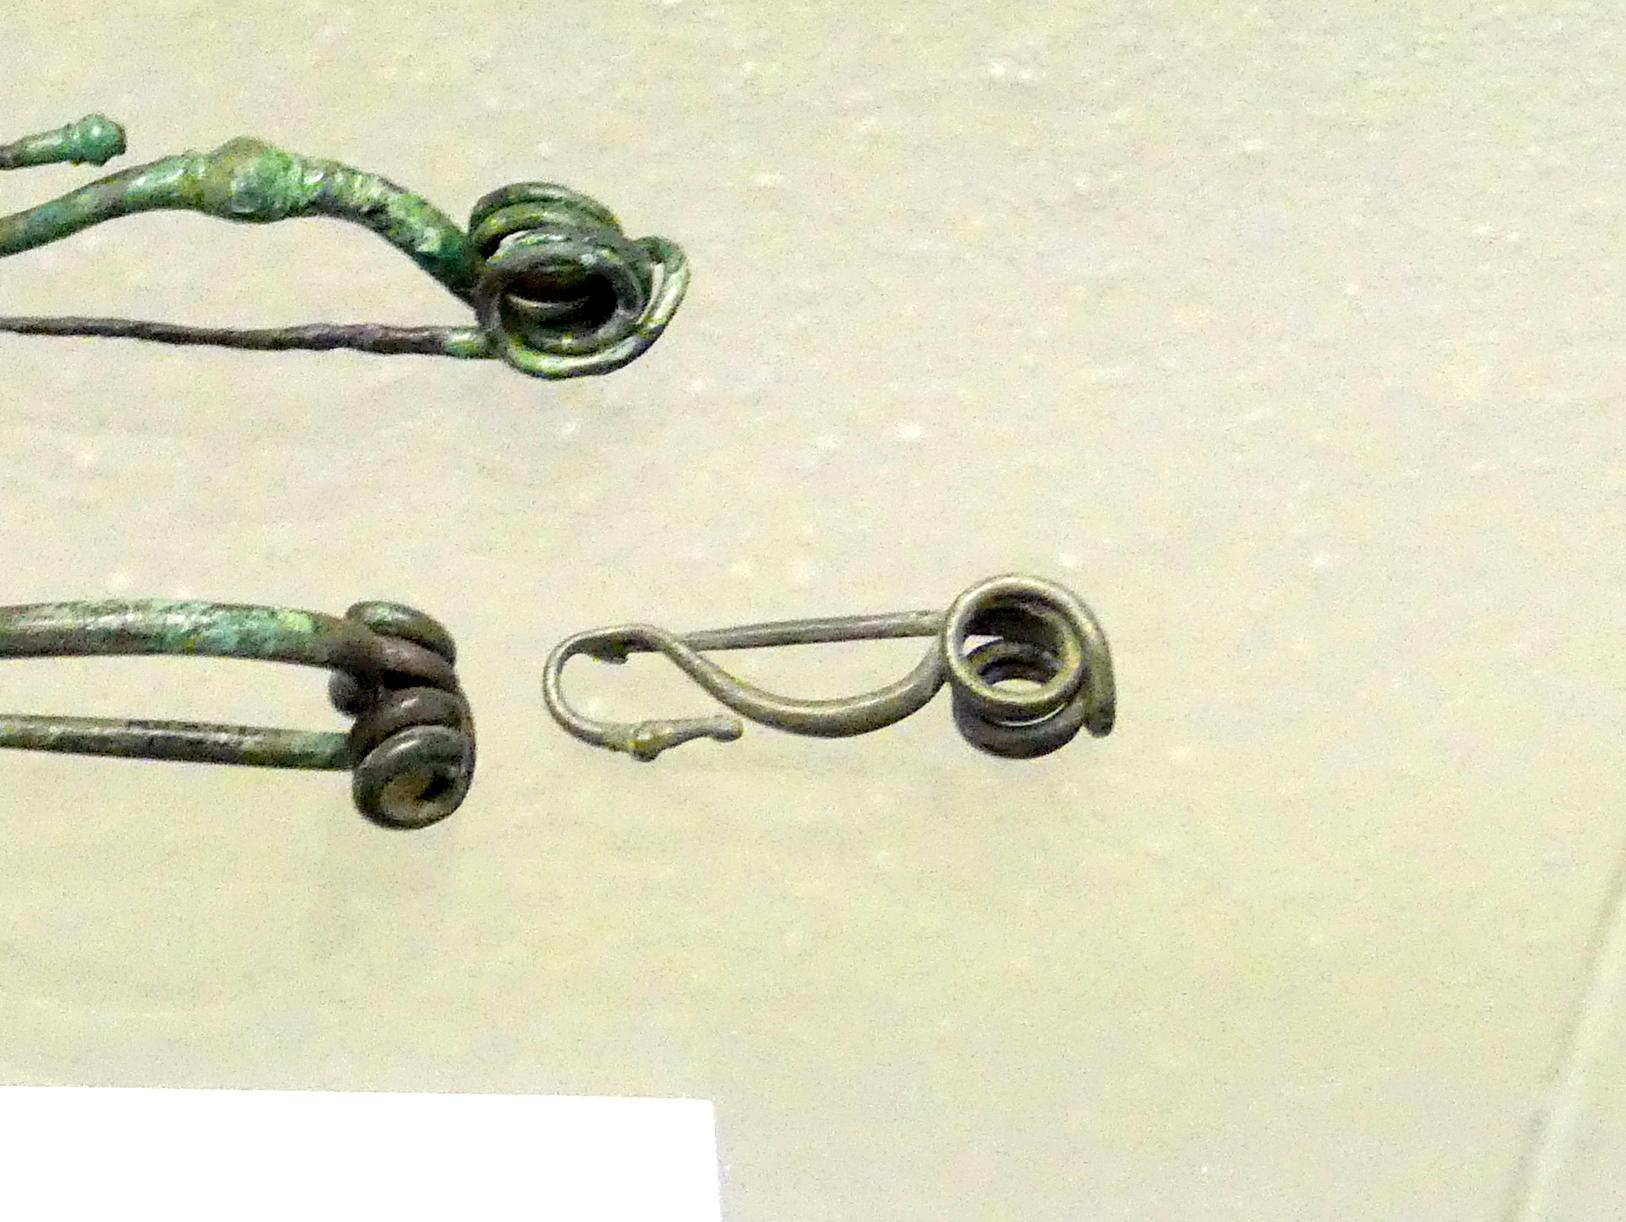 Drahtfibel mit stilisiertem Vogelkopf, Frühlatènezeit A, 700 - 100 v. Chr., Bild 1/2